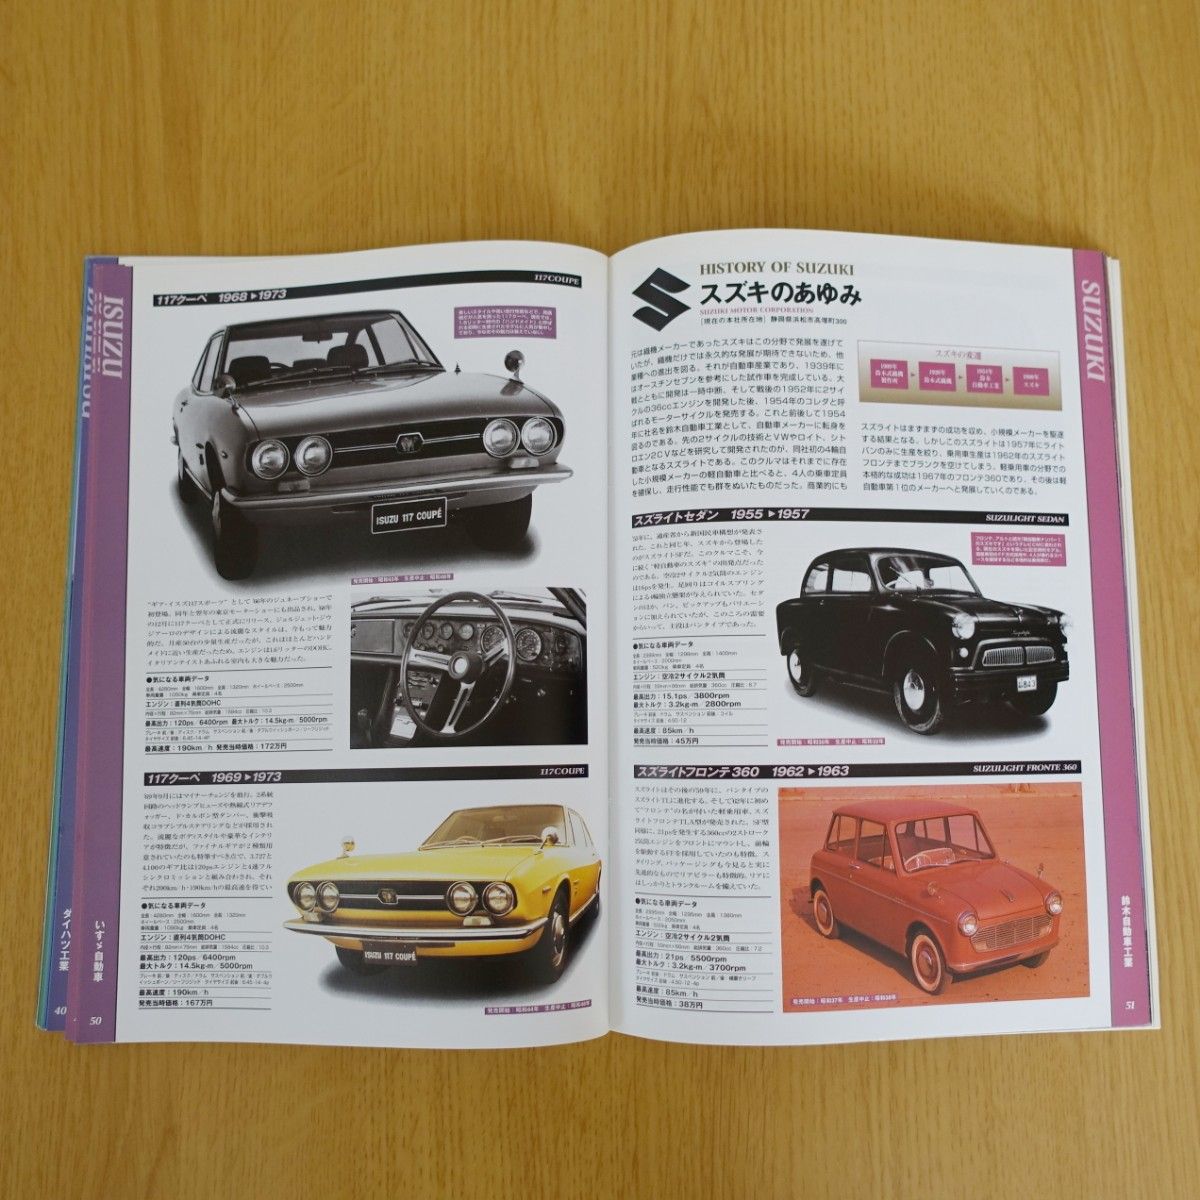 絶版車カタログ 国産車編 Part1 創世紀 1950-1969